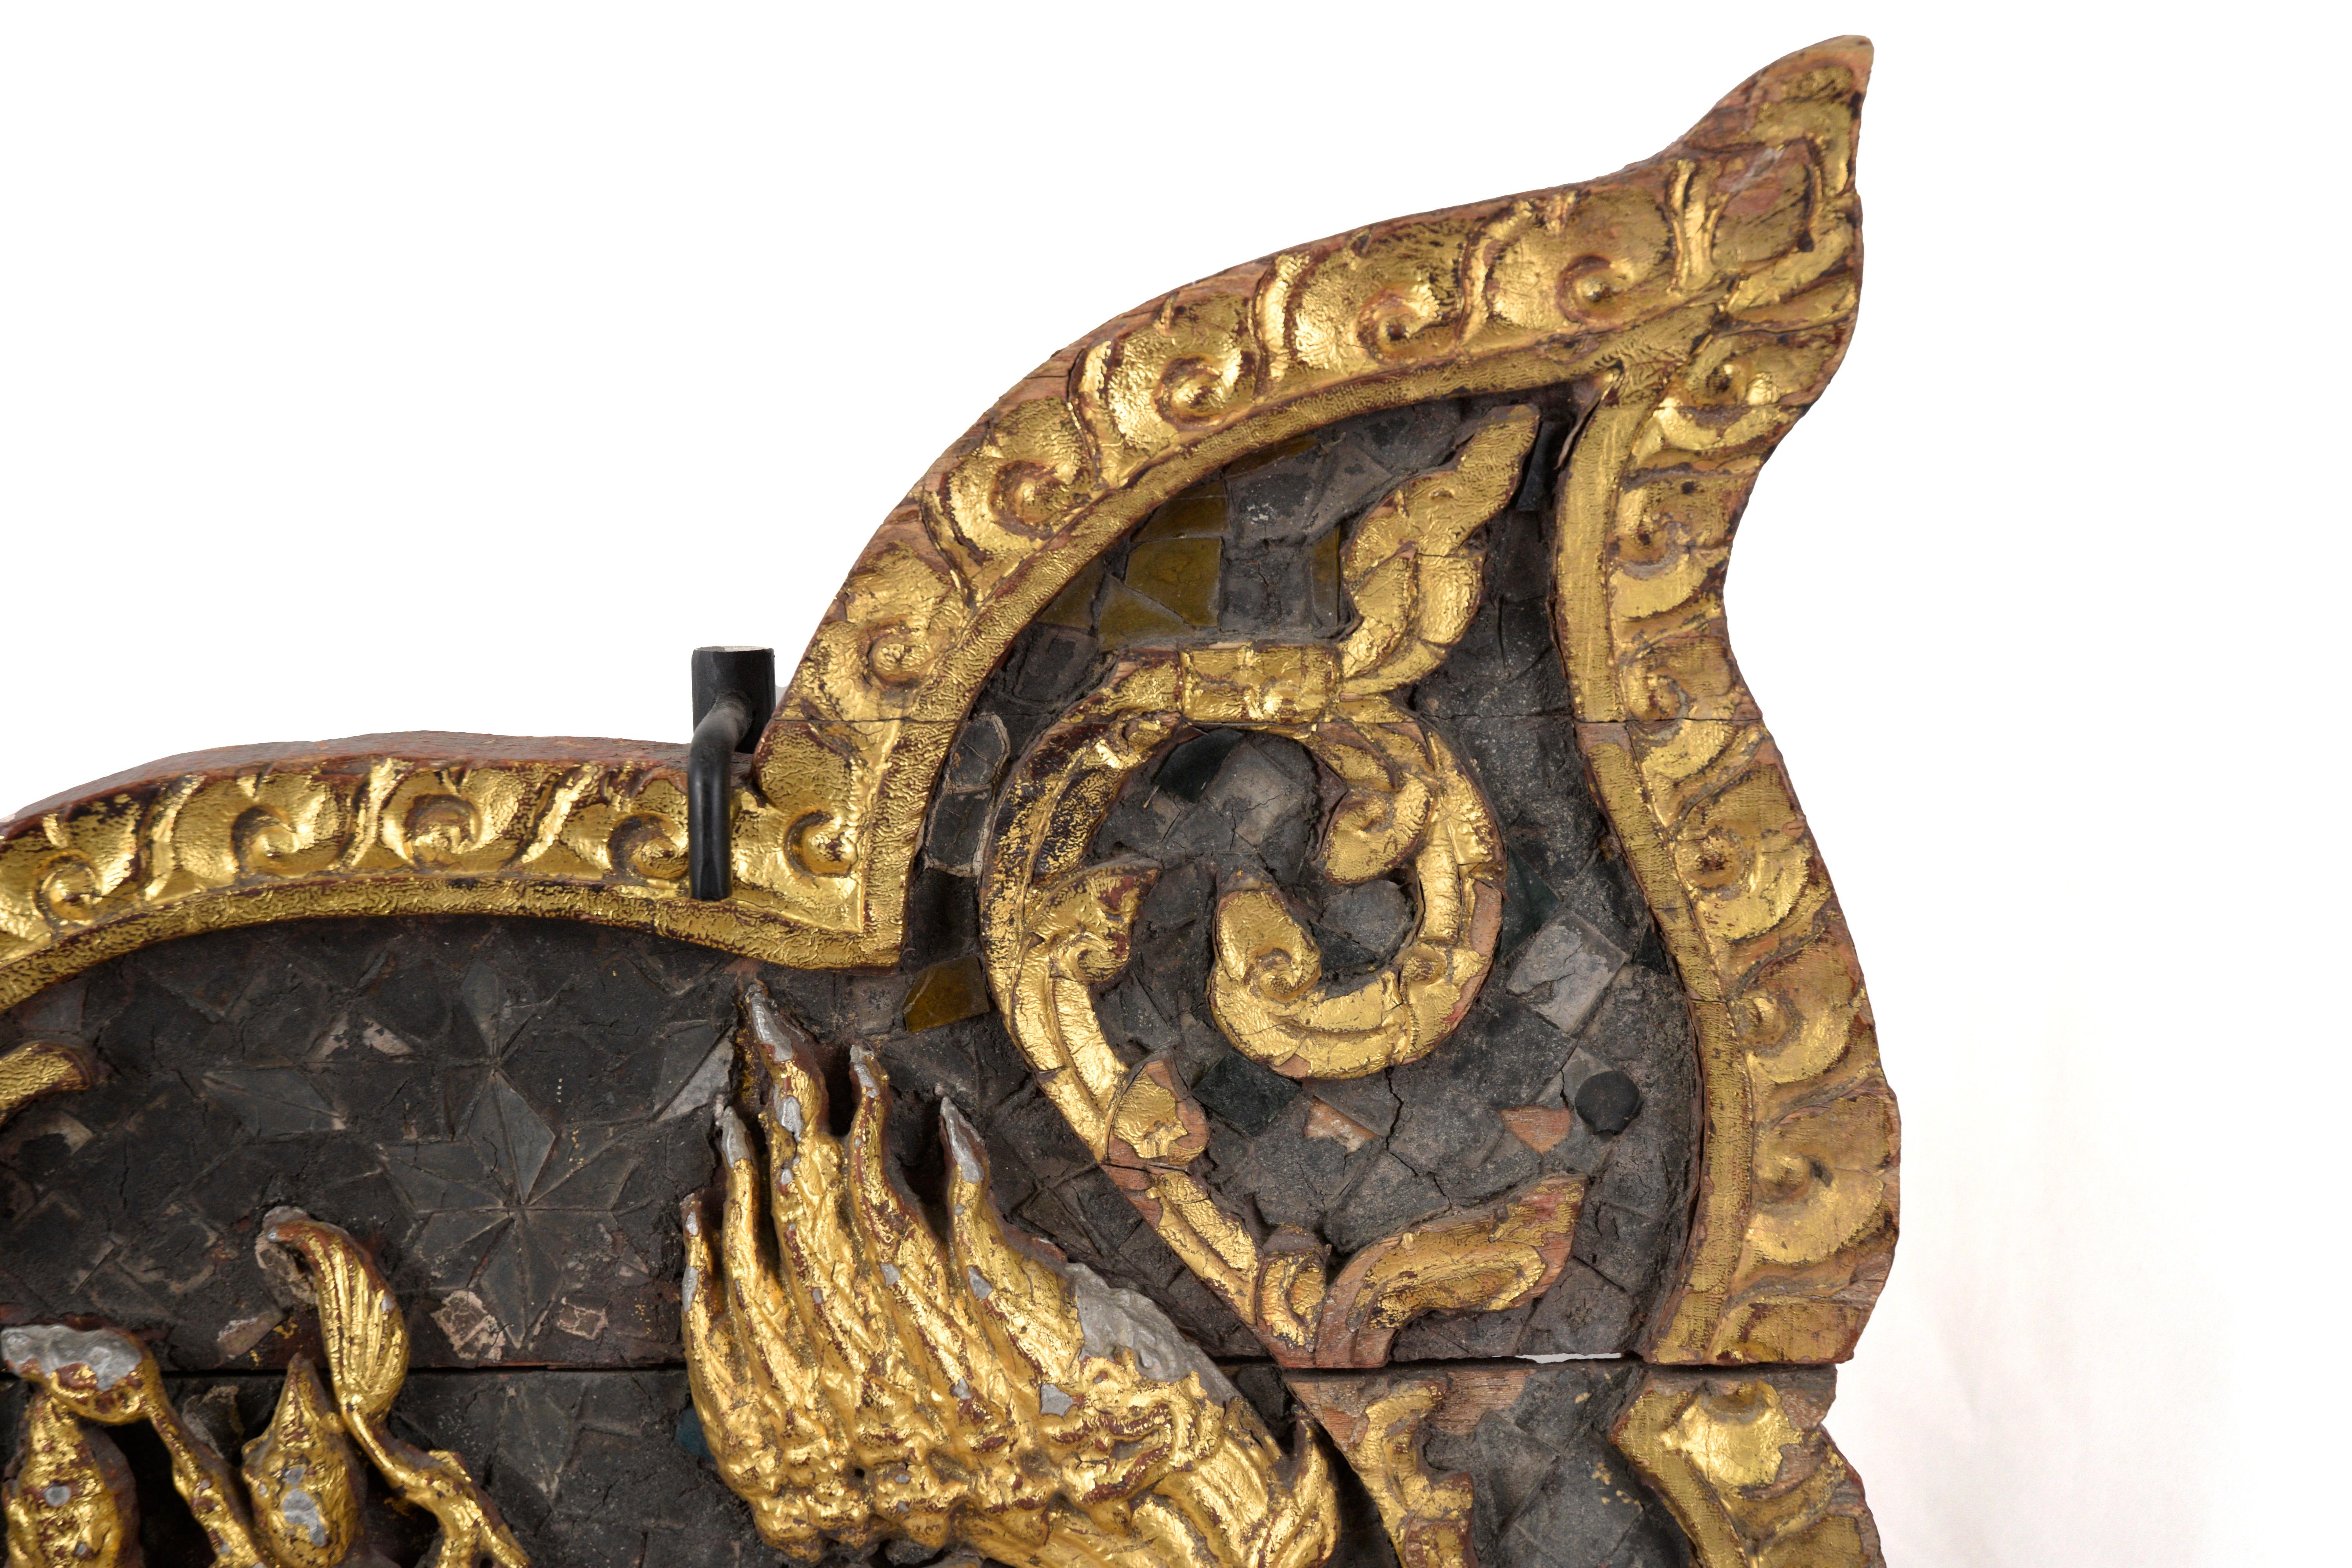 Panneaux latéraux du trône thaïlandais sculptés et dorés de l'époque de Rattanakosin

Panneaux ornés de sculptures et de dorures en provenance de Thaïlande. La partie centrale de ces panneaux représente Bouddha allongé, probablement sur un grand lit